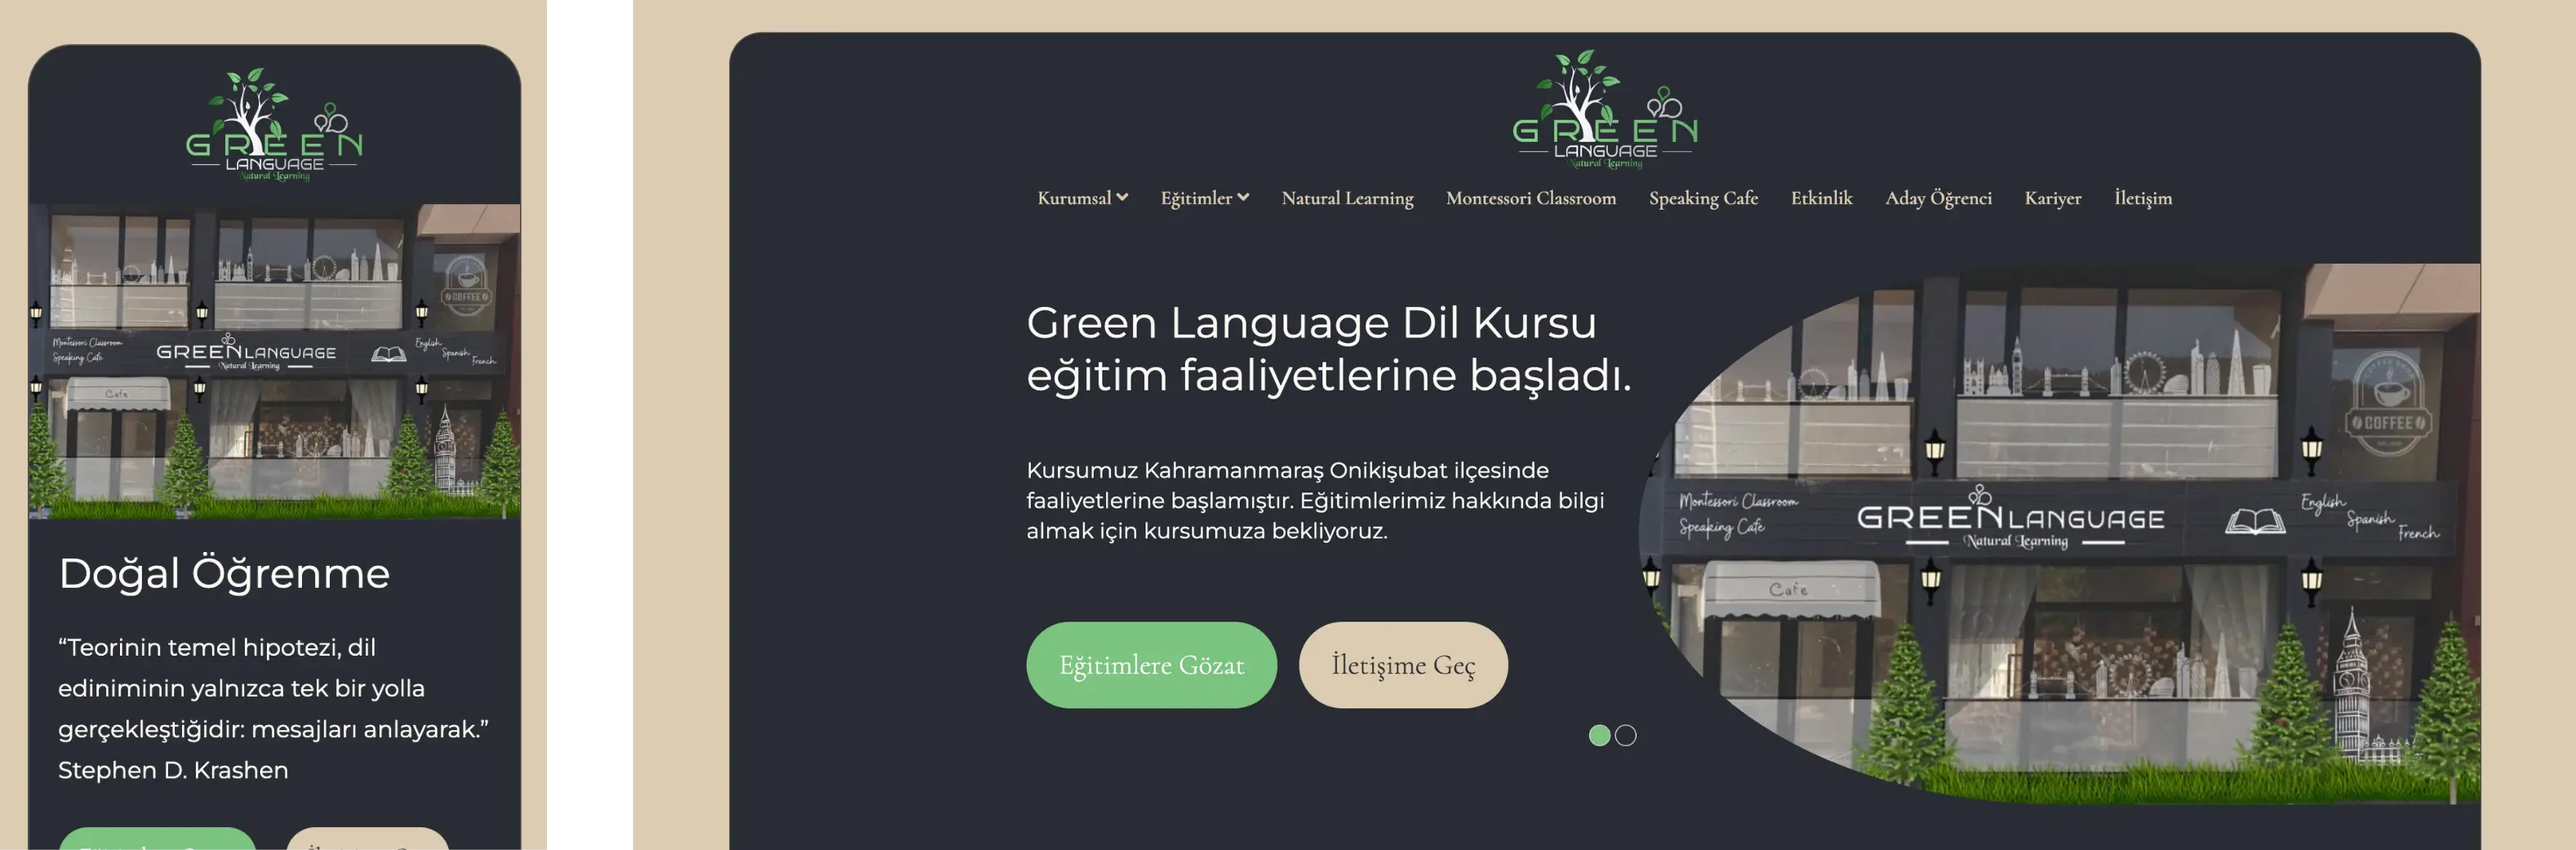 Green Language